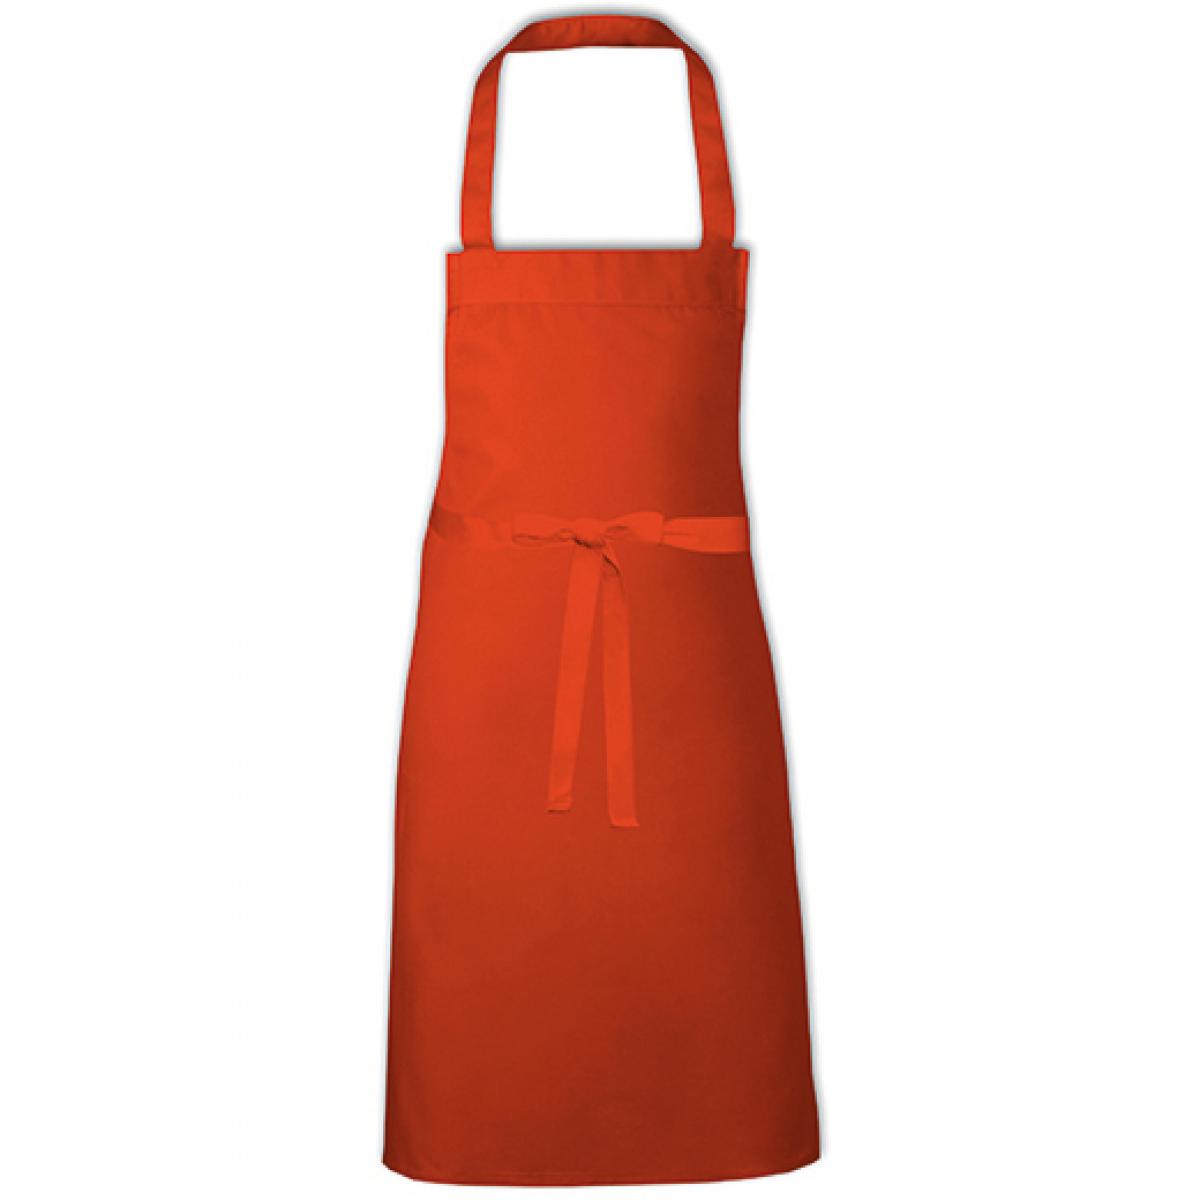 Hersteller: Link Kitchen Wear Herstellernummer: BBQ8073 Artikelbezeichnung: Barbecue Apron - 73 x 80 cm - Waschbar bis 60 °C Farbe: Orange